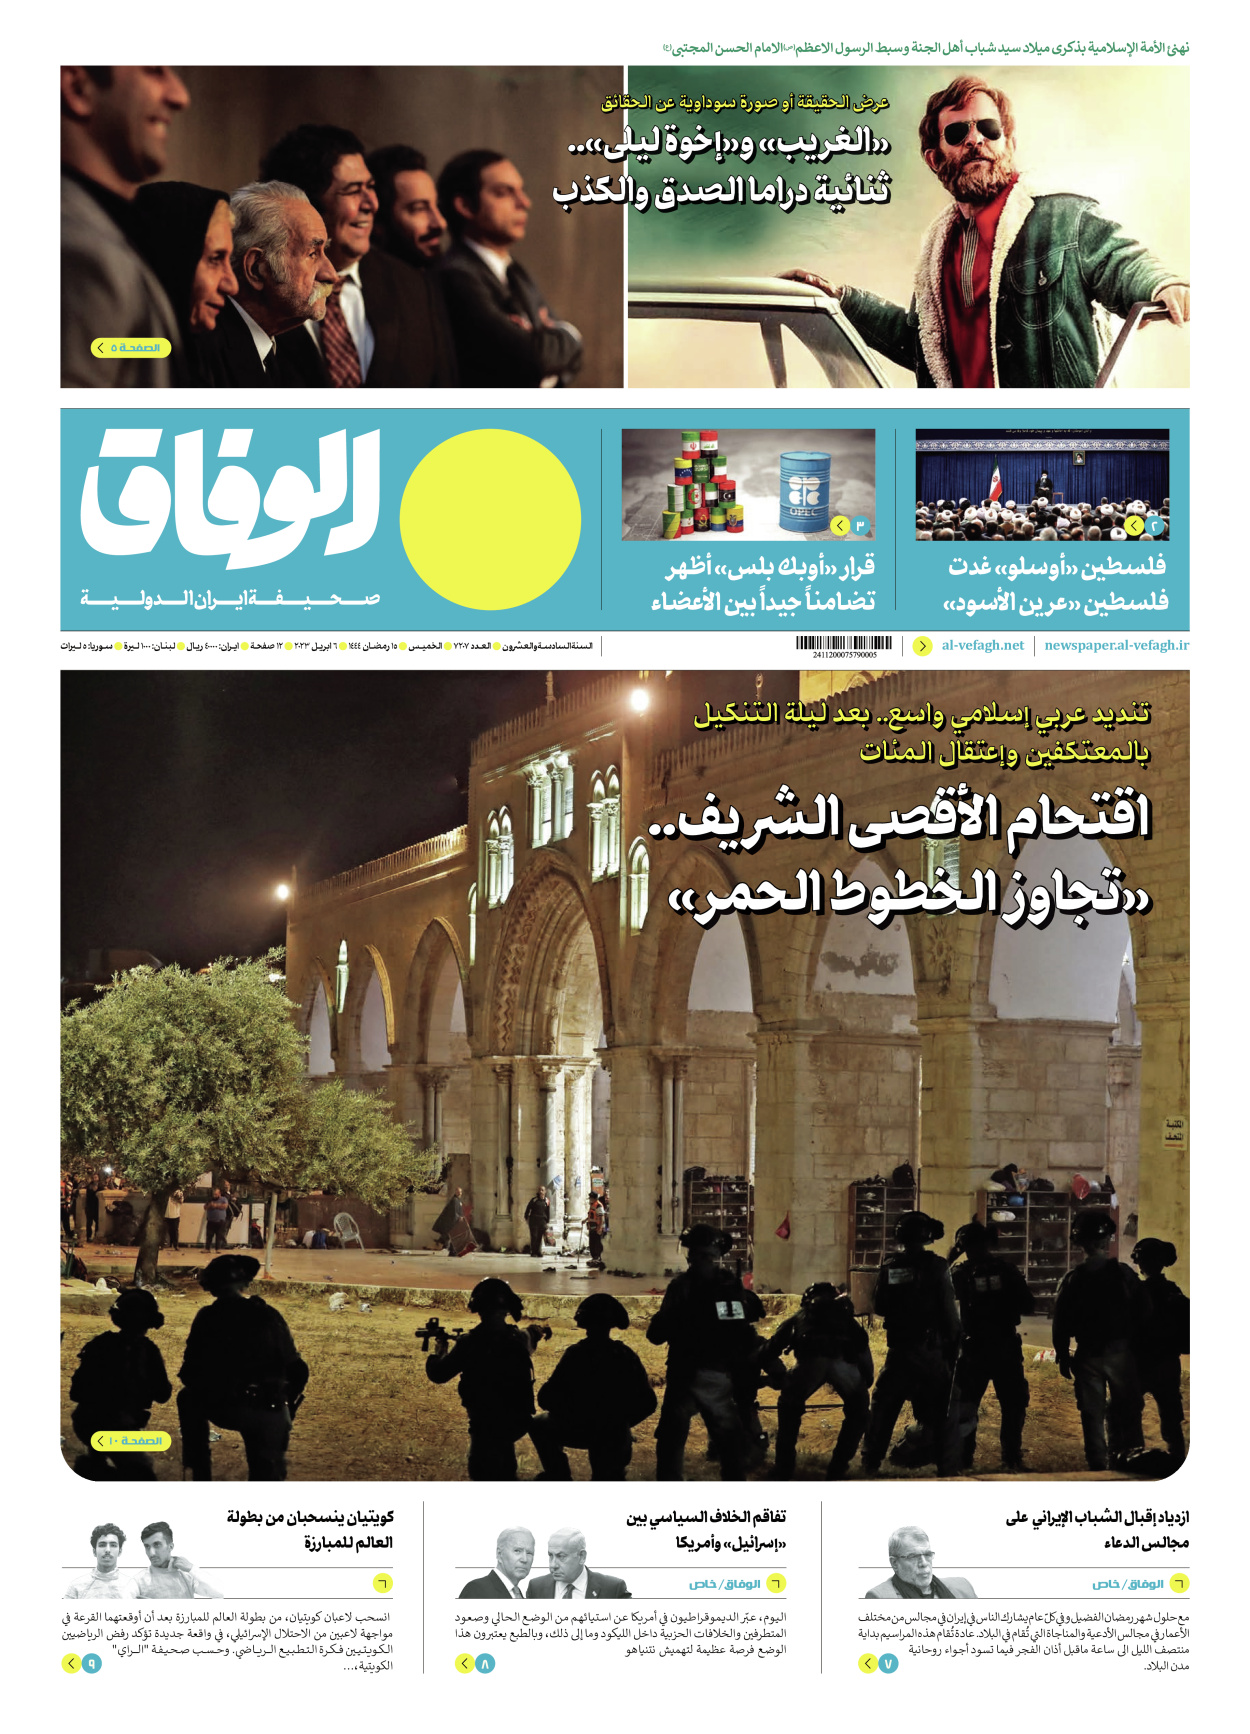 صحیفة ایران الدولیة الوفاق - العدد سبعة آلاف ومائتان وسبعة - ٠٦ أبريل ٢٠٢٣ - الصفحة ۱